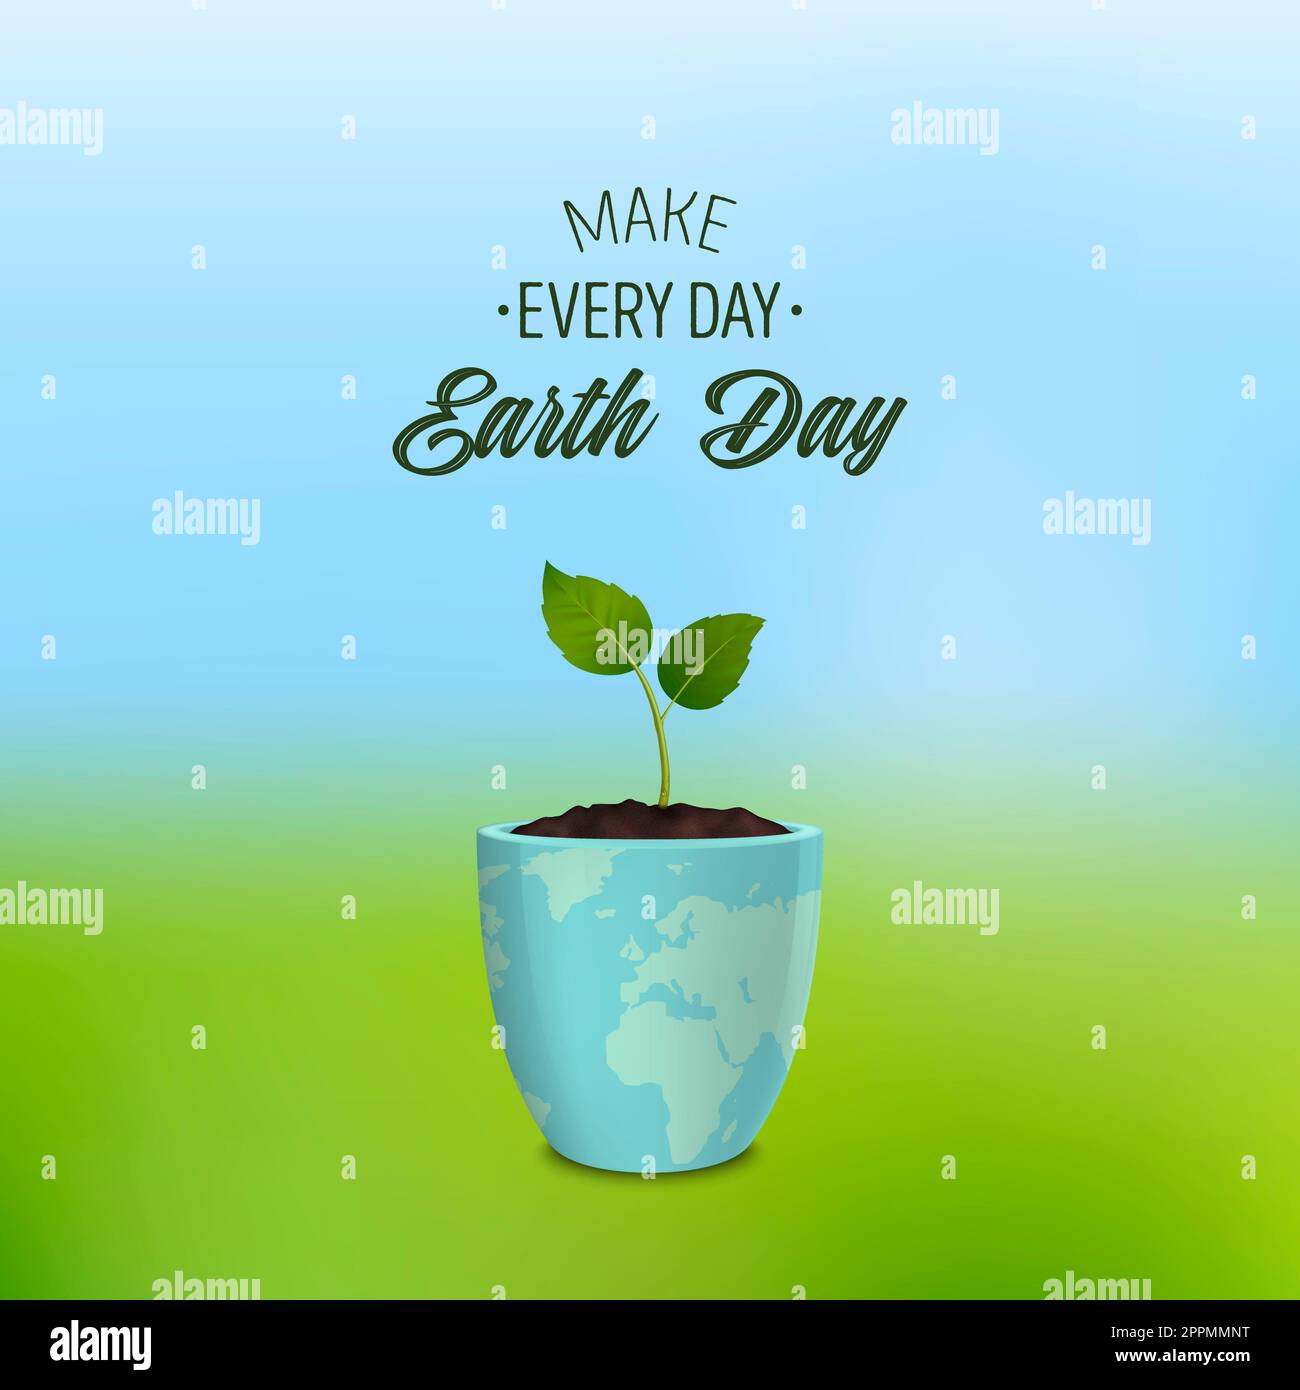 Rendi ogni giorno la giornata della Terra - sfondo con citazione. Concetto di ecologia. Earth Day, Save the Earth o Green Day. Banner vettoriale con germoglio in un vaso di fiori con un'impronta della Terra. EPS10. Foto Stock